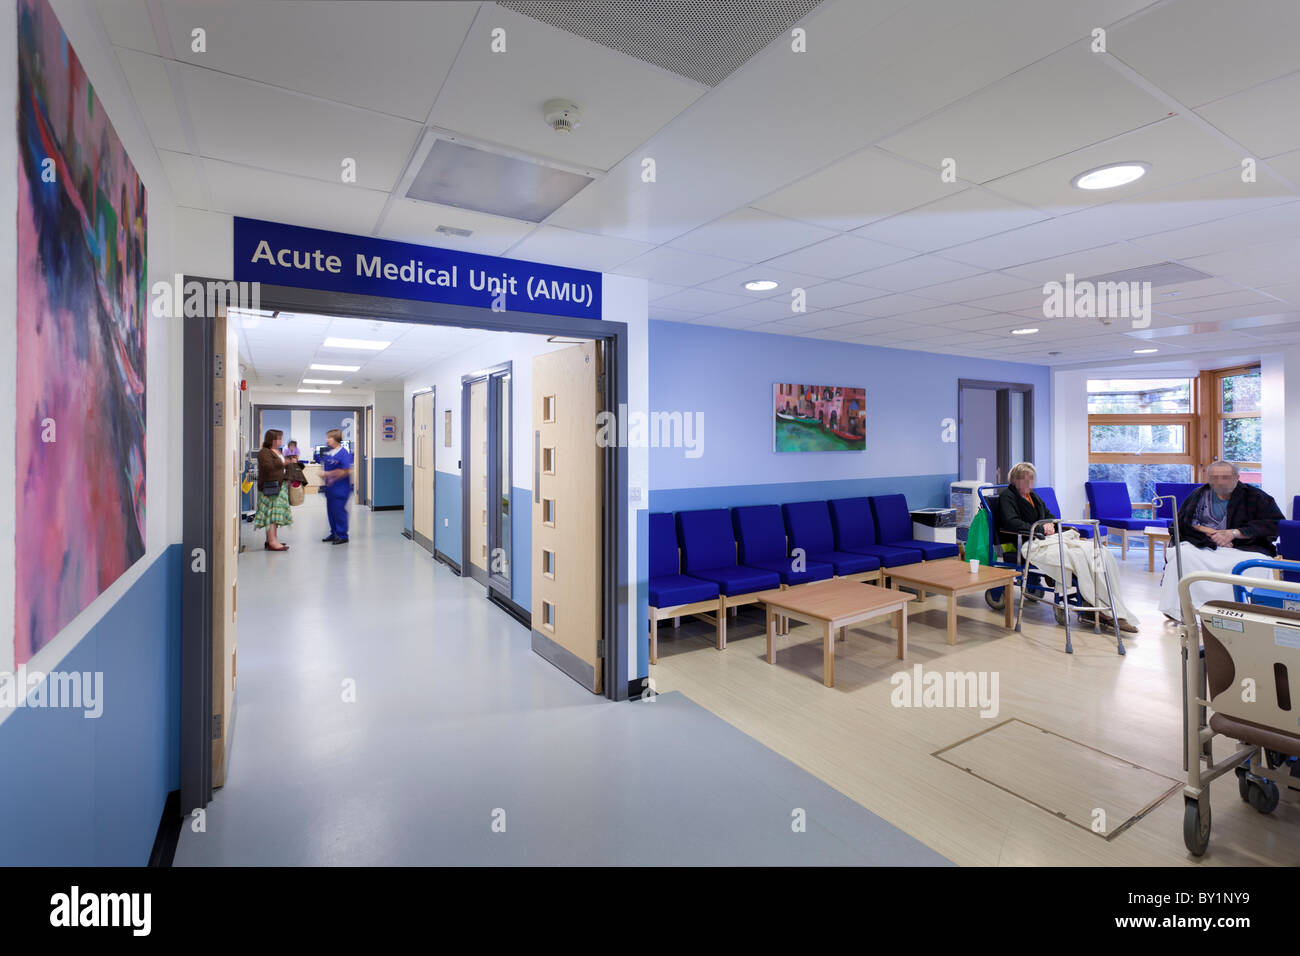 Rezeption und Eingang zum AMU akuten medizinischen Abteilung, Chichester Krankenhaus Stockfoto